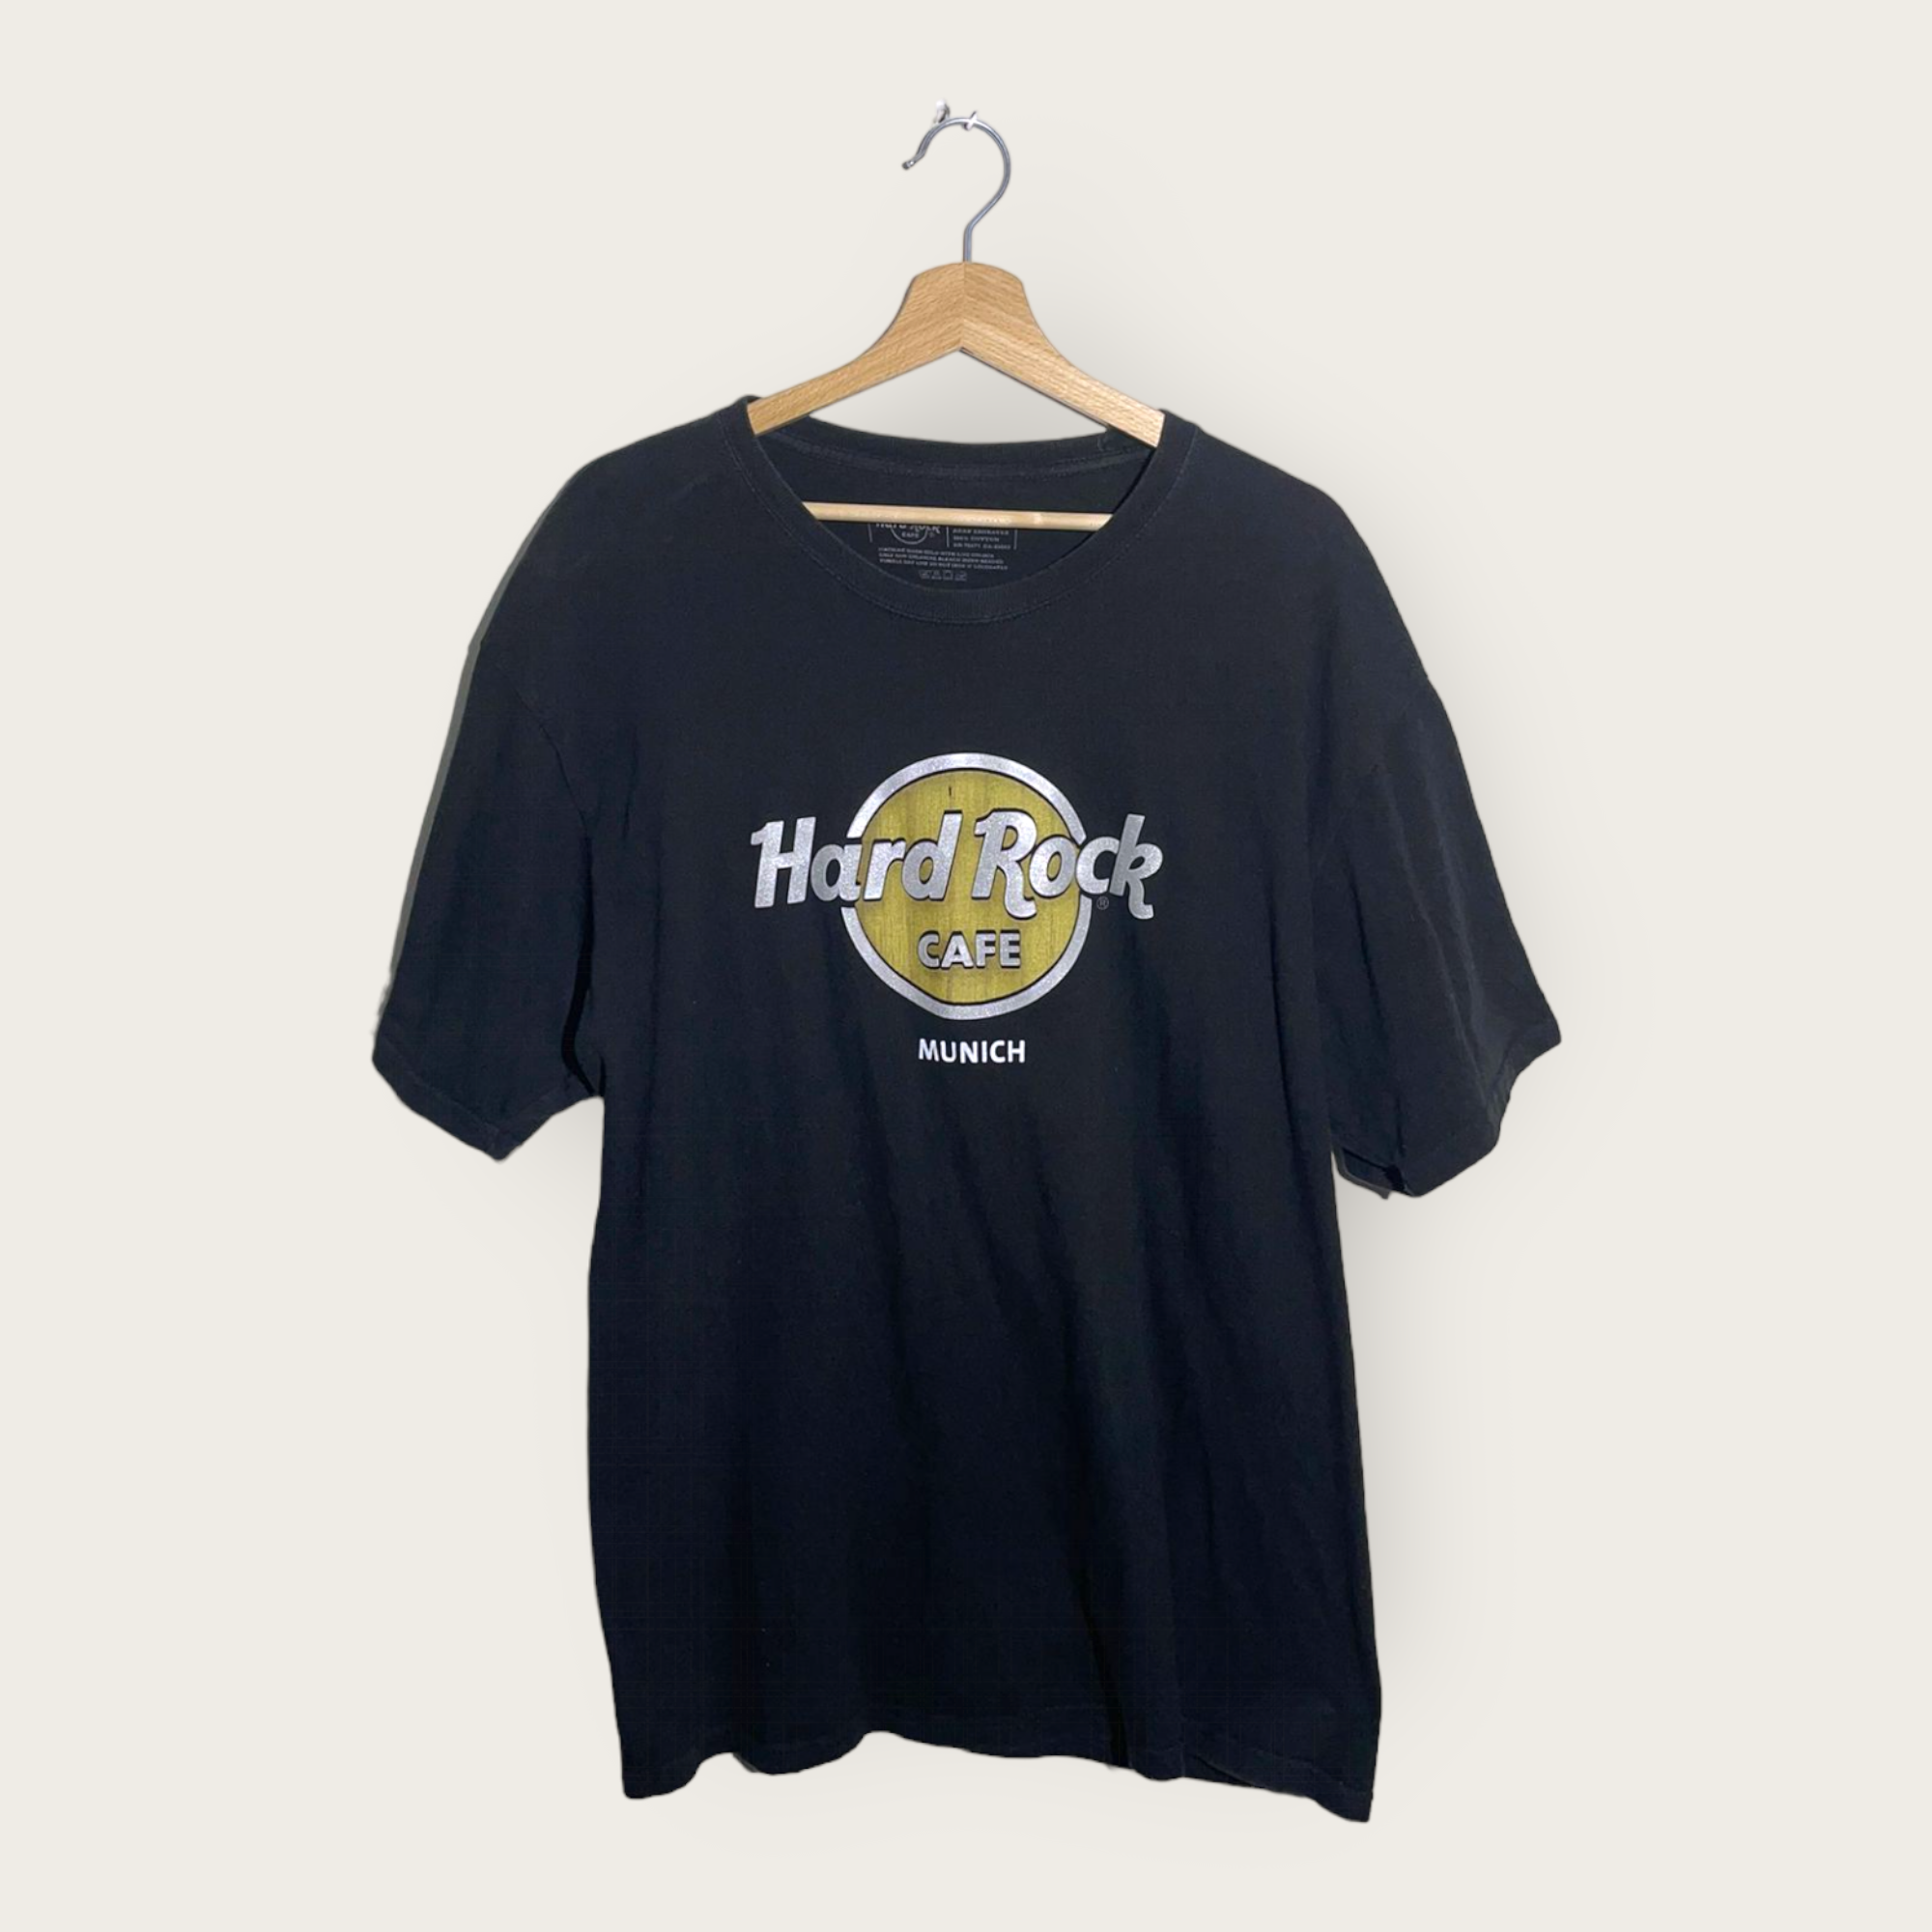 Hard Rock Cafe T-Shirt (Munich) - Cultured Vintage